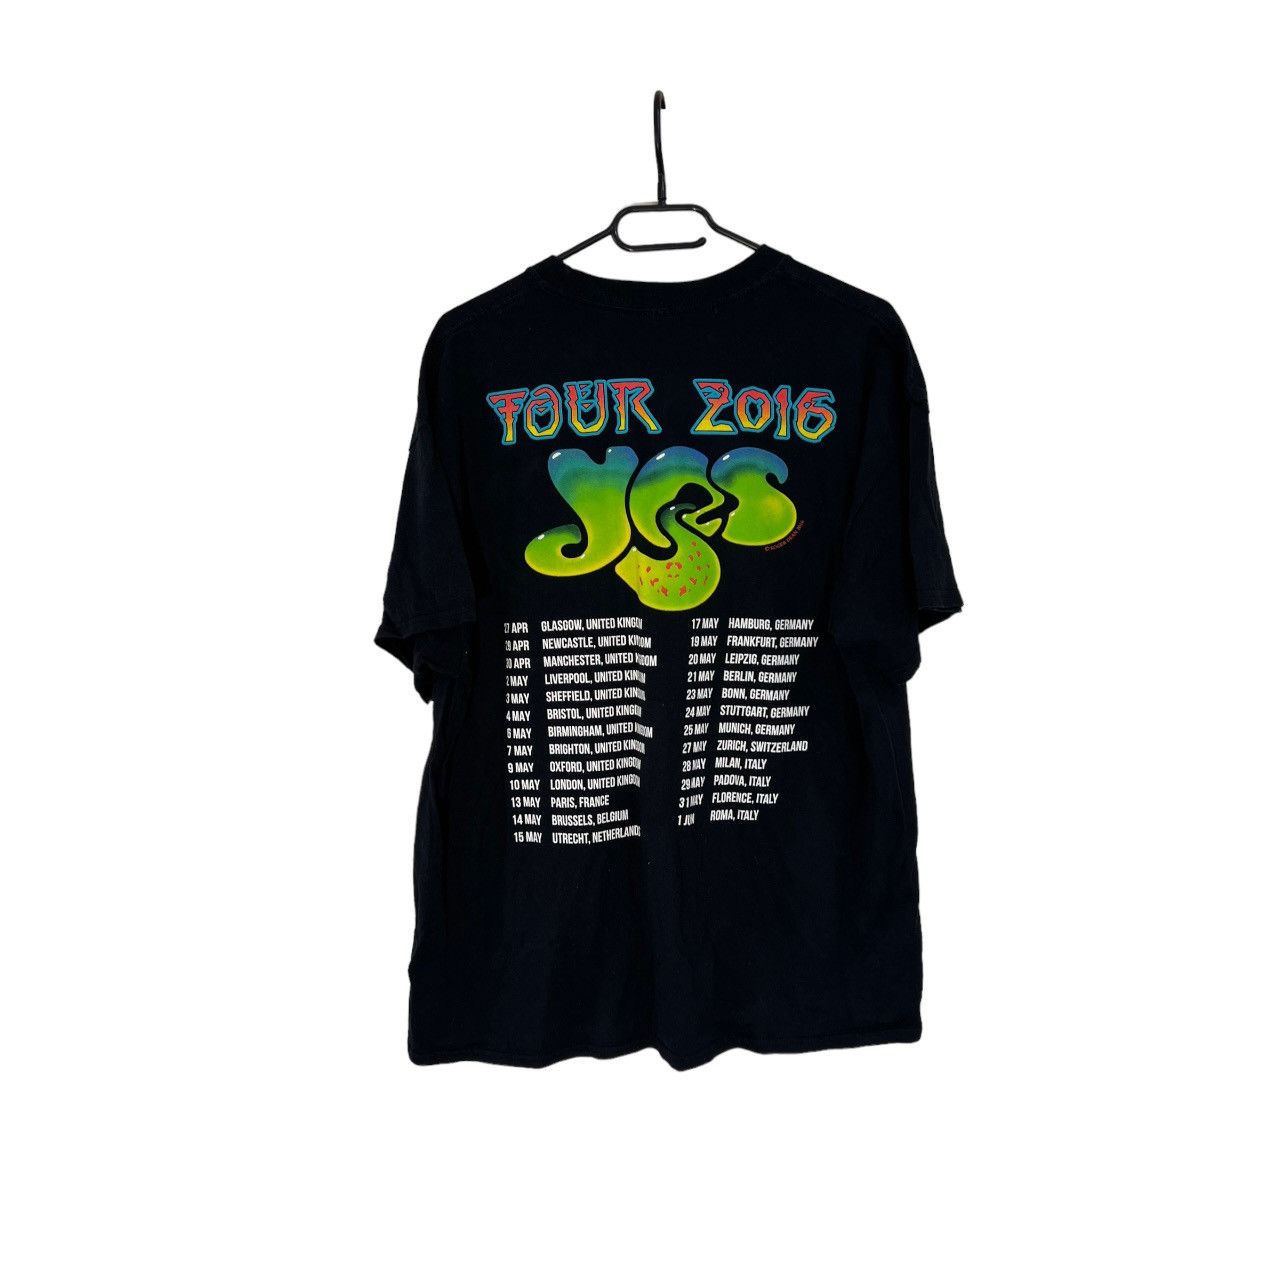 Vintage Roger dean tour 2016 t-shirt retro tee 90s black Size US M / EU 48-50 / 2 - 2 Preview